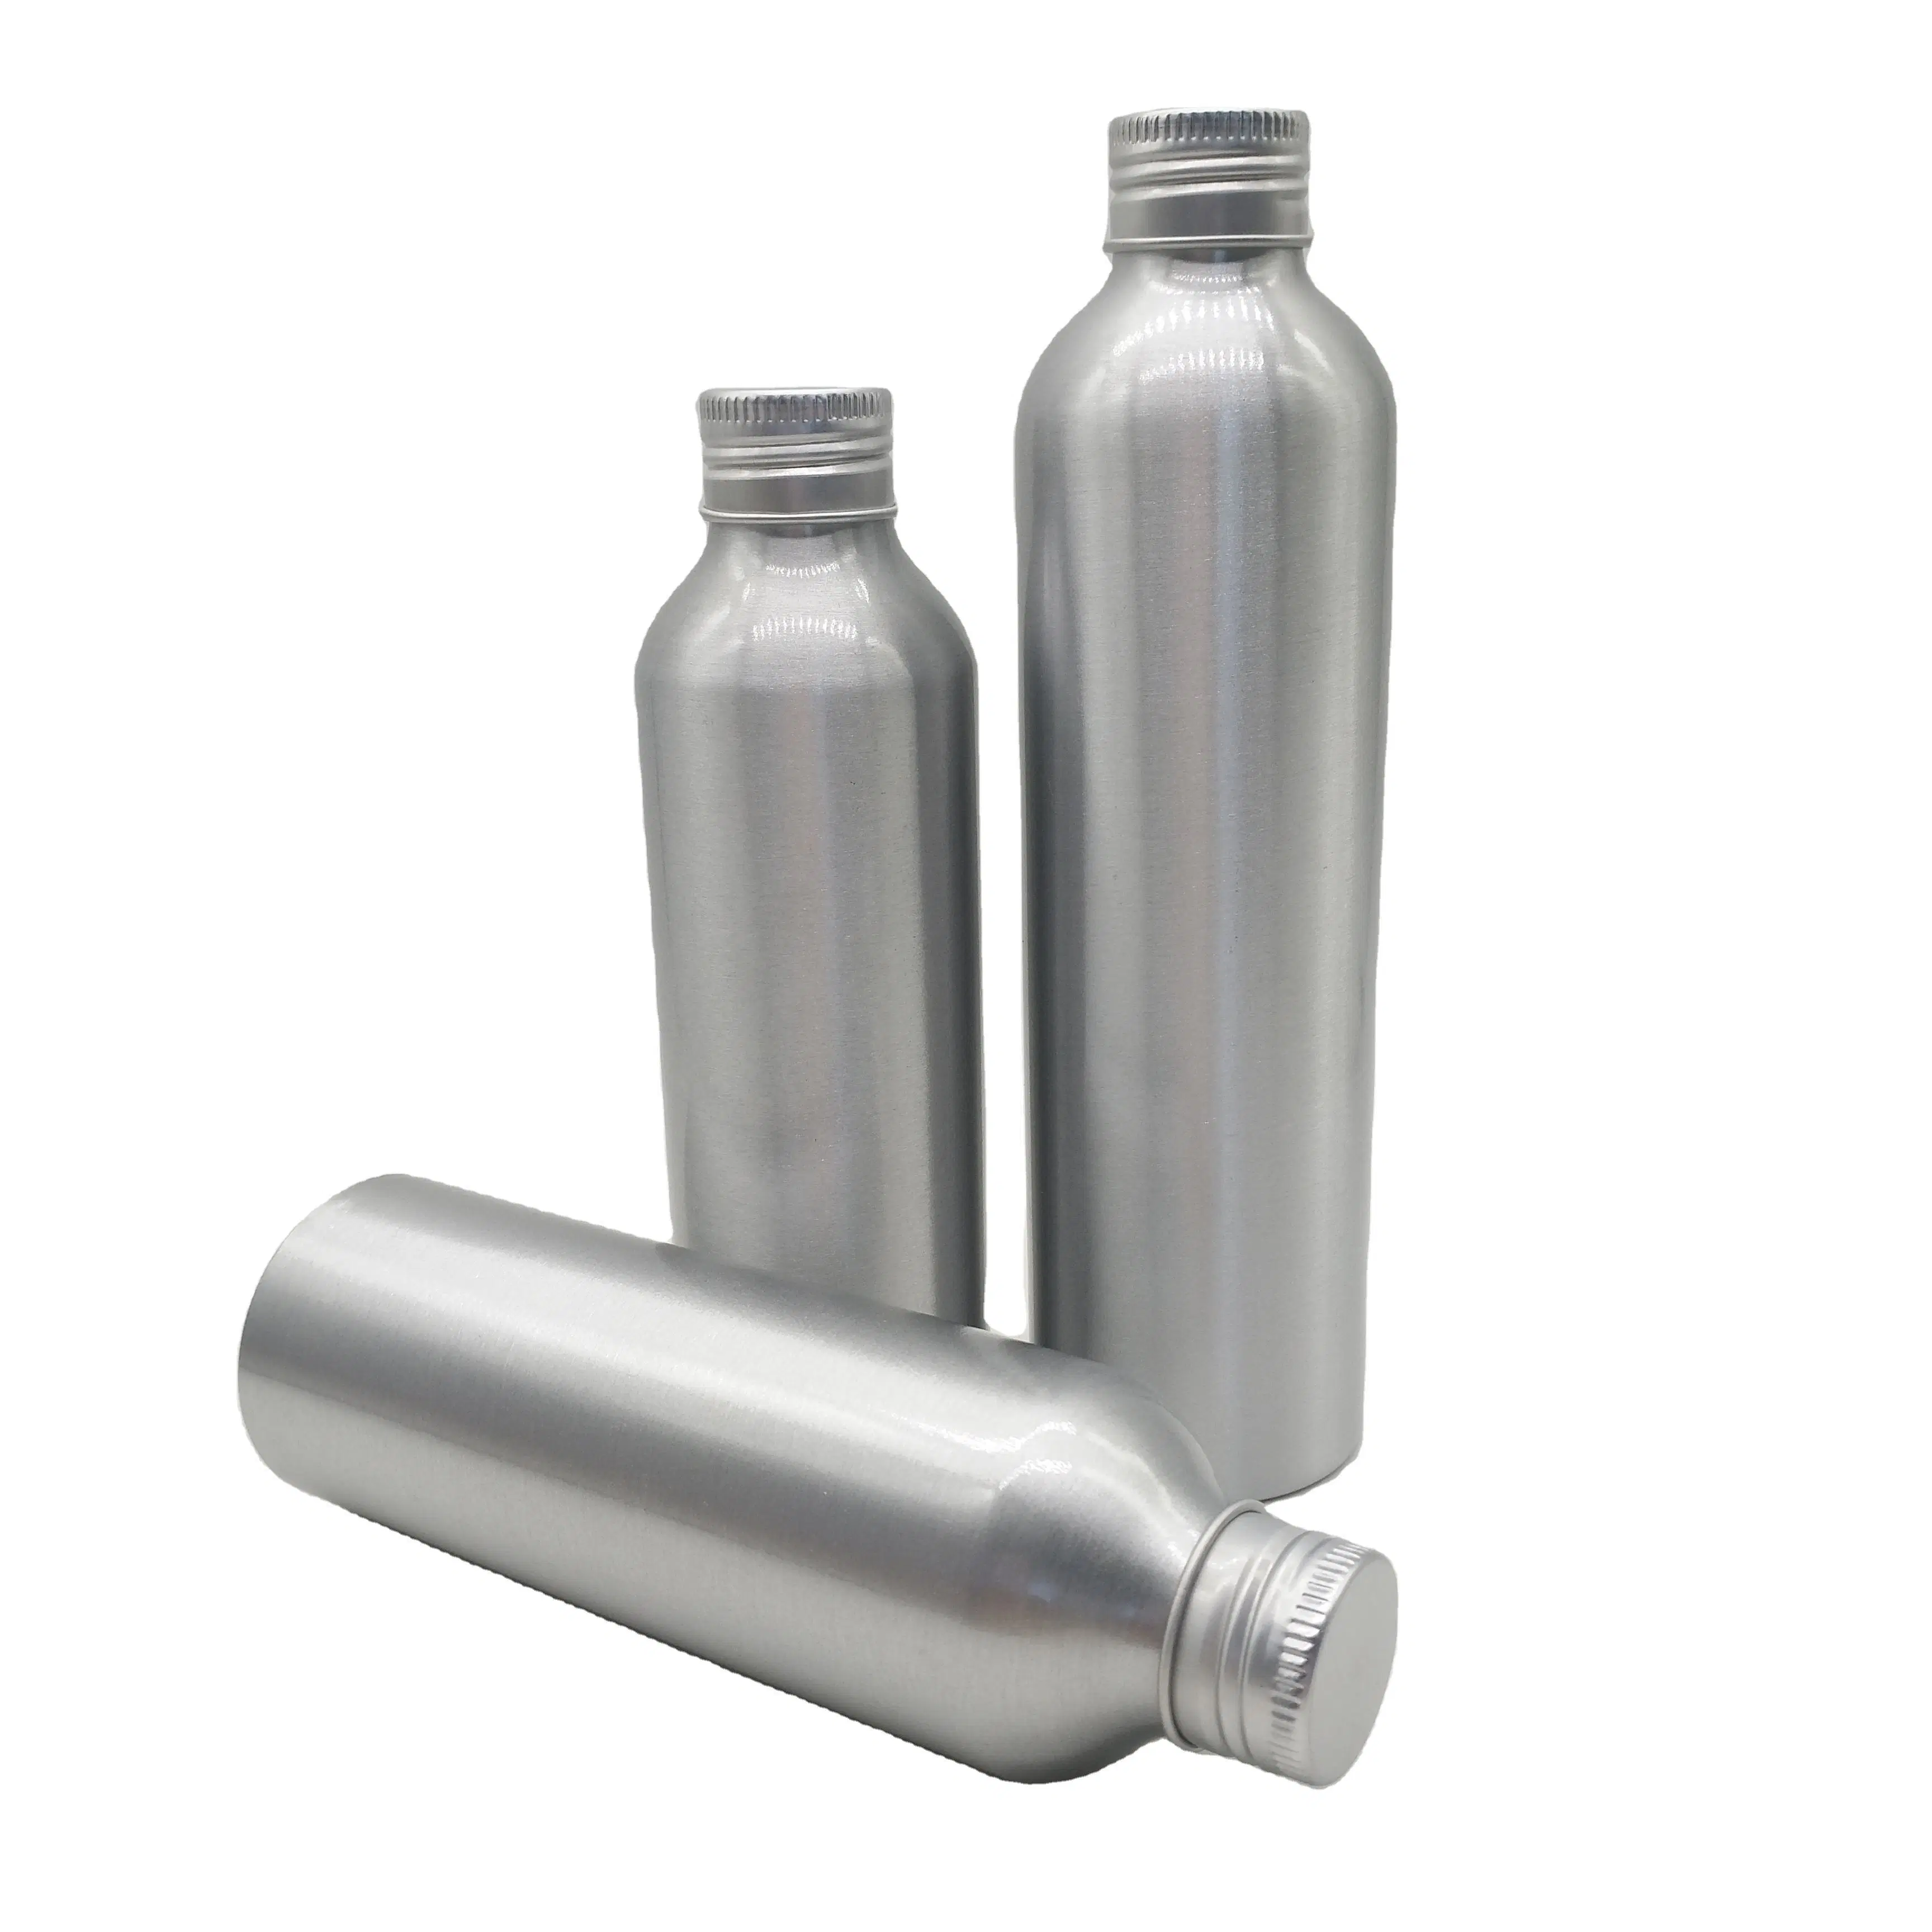 Wholesale Custom Empty Aluminum Bottles Aluminum Cosmetic Containers Manufacturer